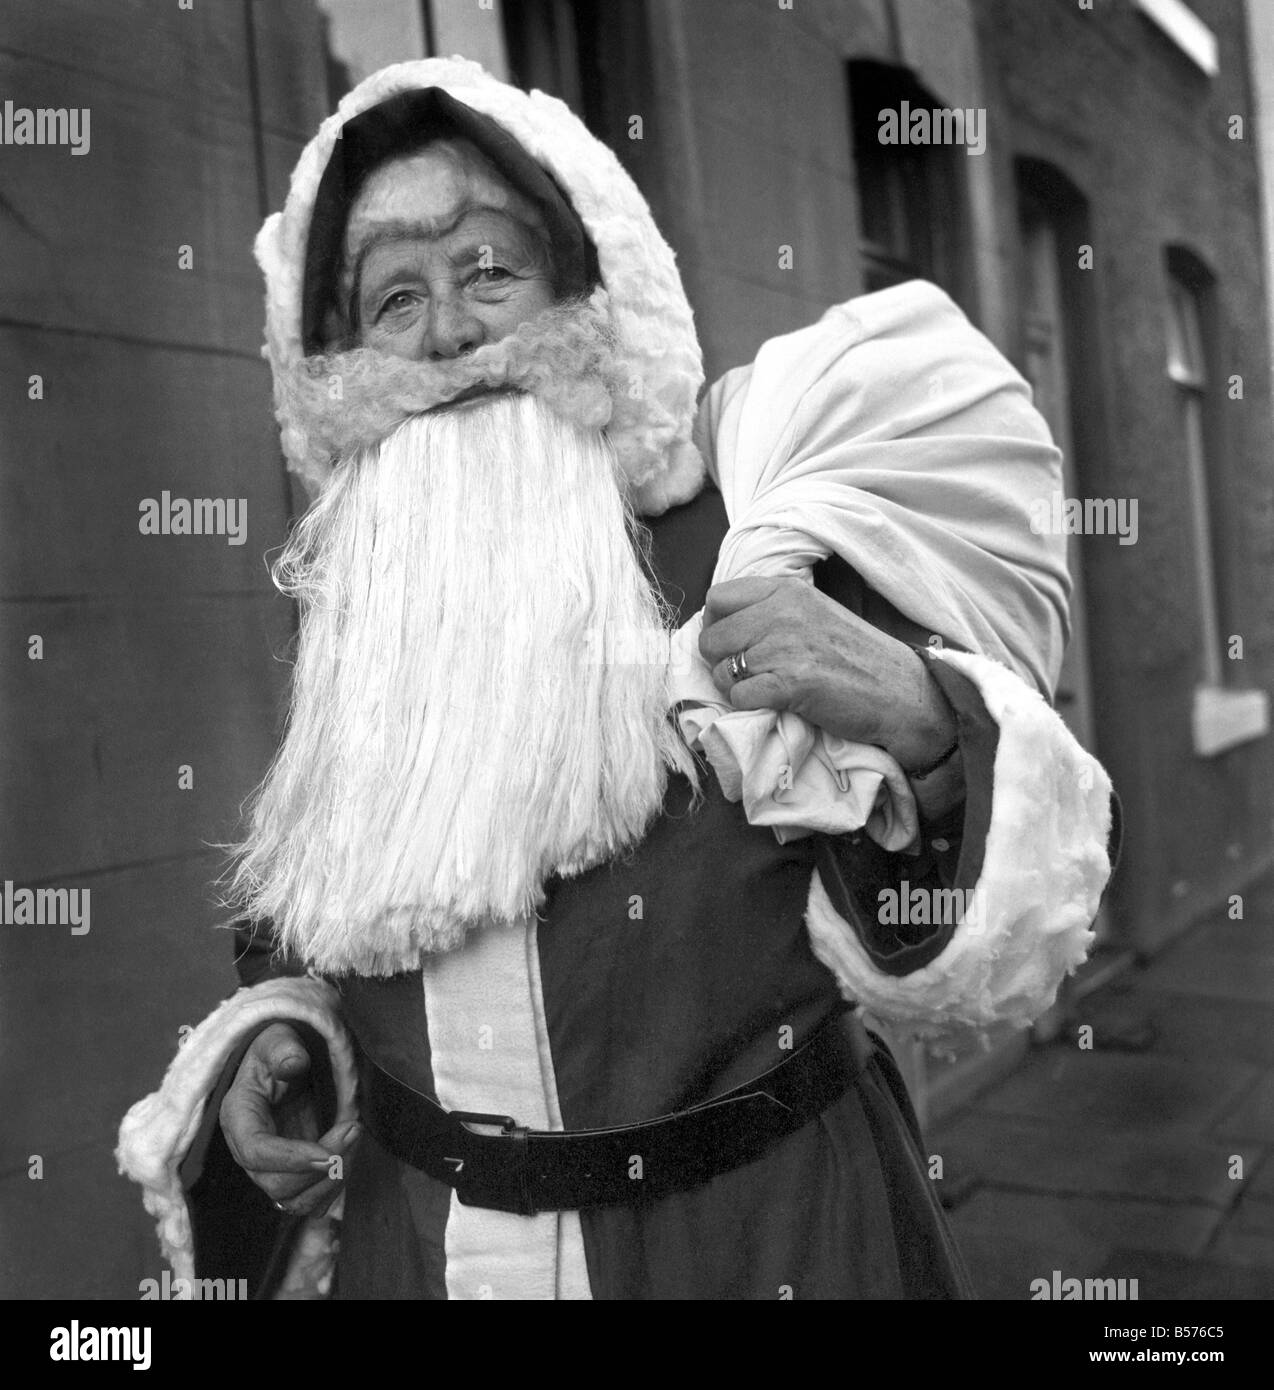 Eine ältere Frau als Weihnachtsmann verkleidet auf ihrem Weg zum Engagement von Nachbarskinder begleitet. Dezember 1969 Z11977-002 Stockfoto